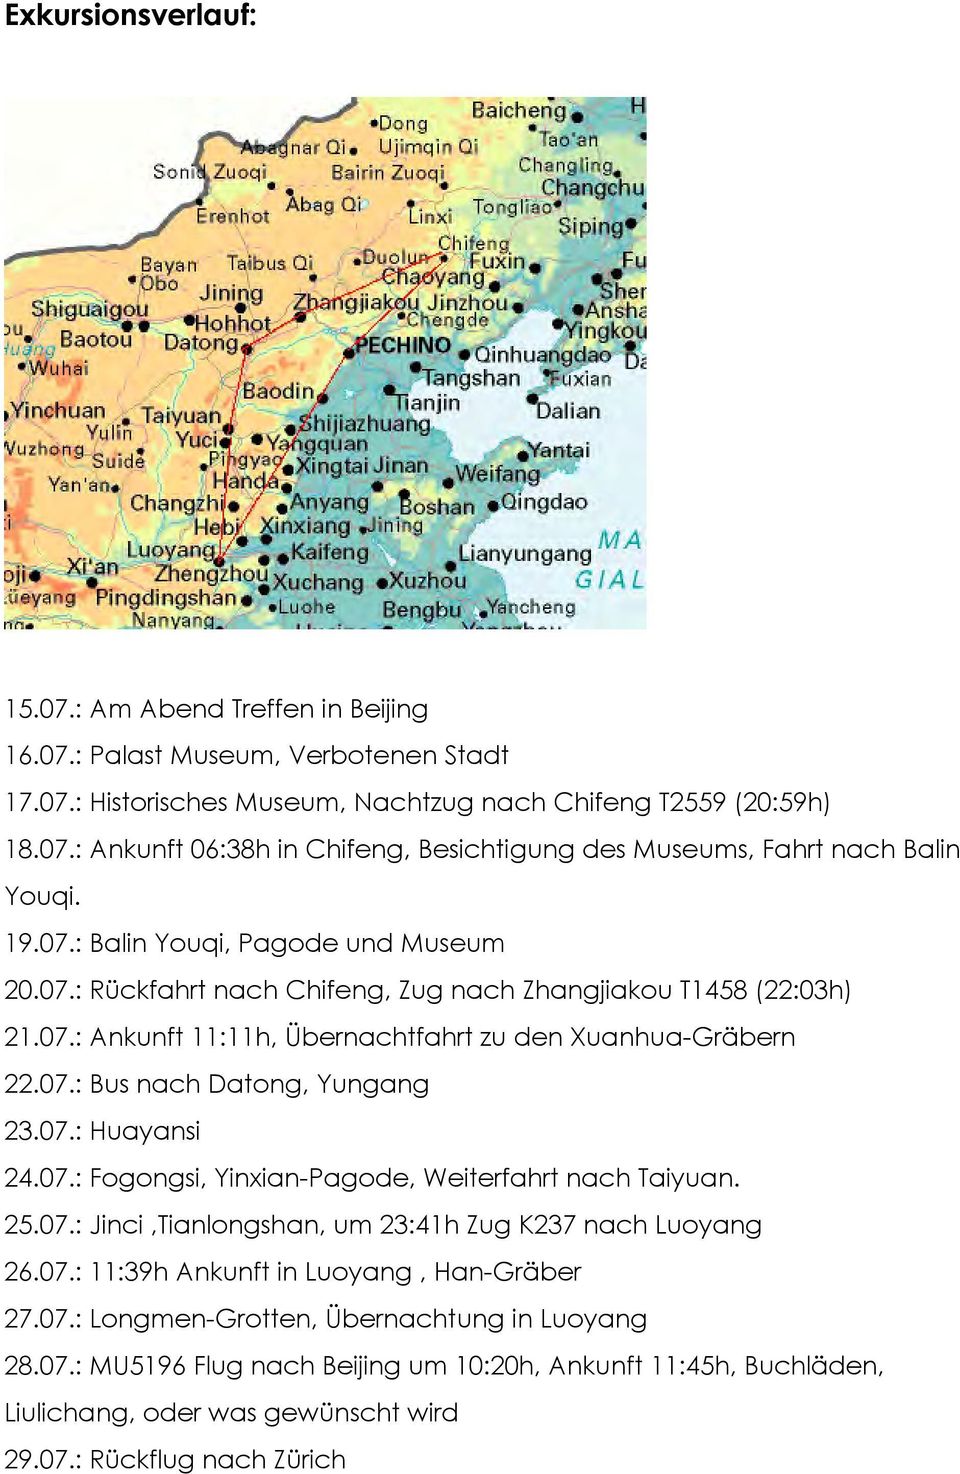 07.: Huayansi 24.07.: Fogongsi, Yinxian-Pagode, Weiterfahrt nach Taiyuan. 25.07.: Jinci,Tianlongshan, um 23:41h Zug K237 nach Luoyang 26.07.: 11:39h Ankunft in Luoyang, Han-Gräber 27.07.: Longmen-Grotten, Übernachtung in Luoyang 28.